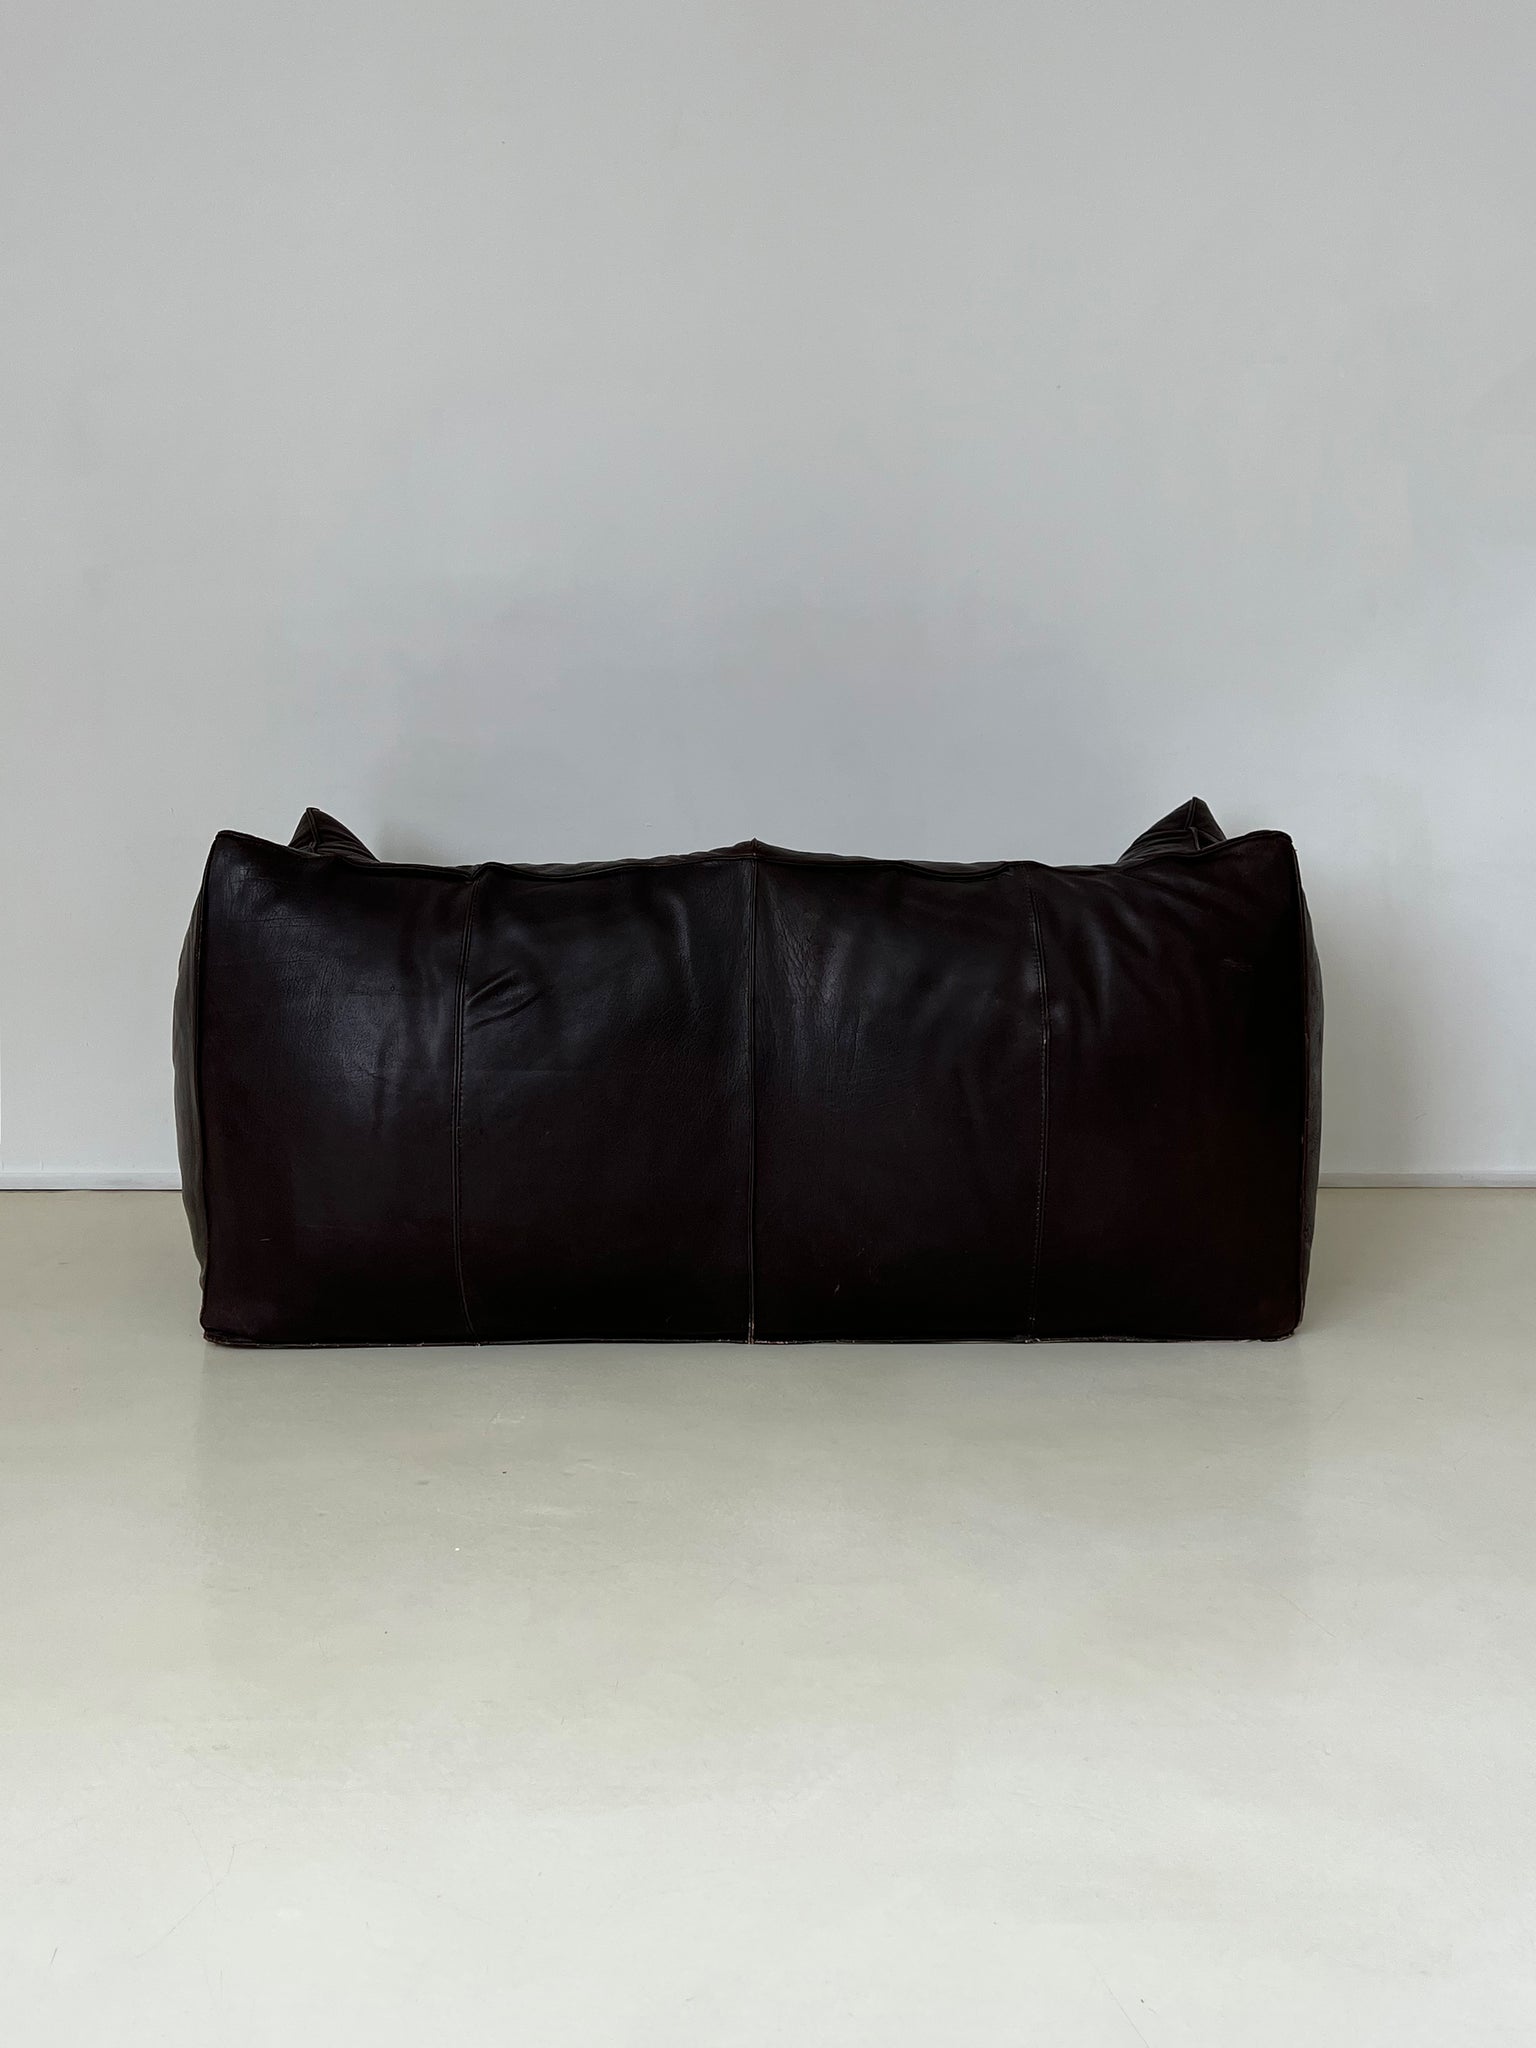 1972 Mario Bellini Leather Le Bambole Sofa for B&B Italia